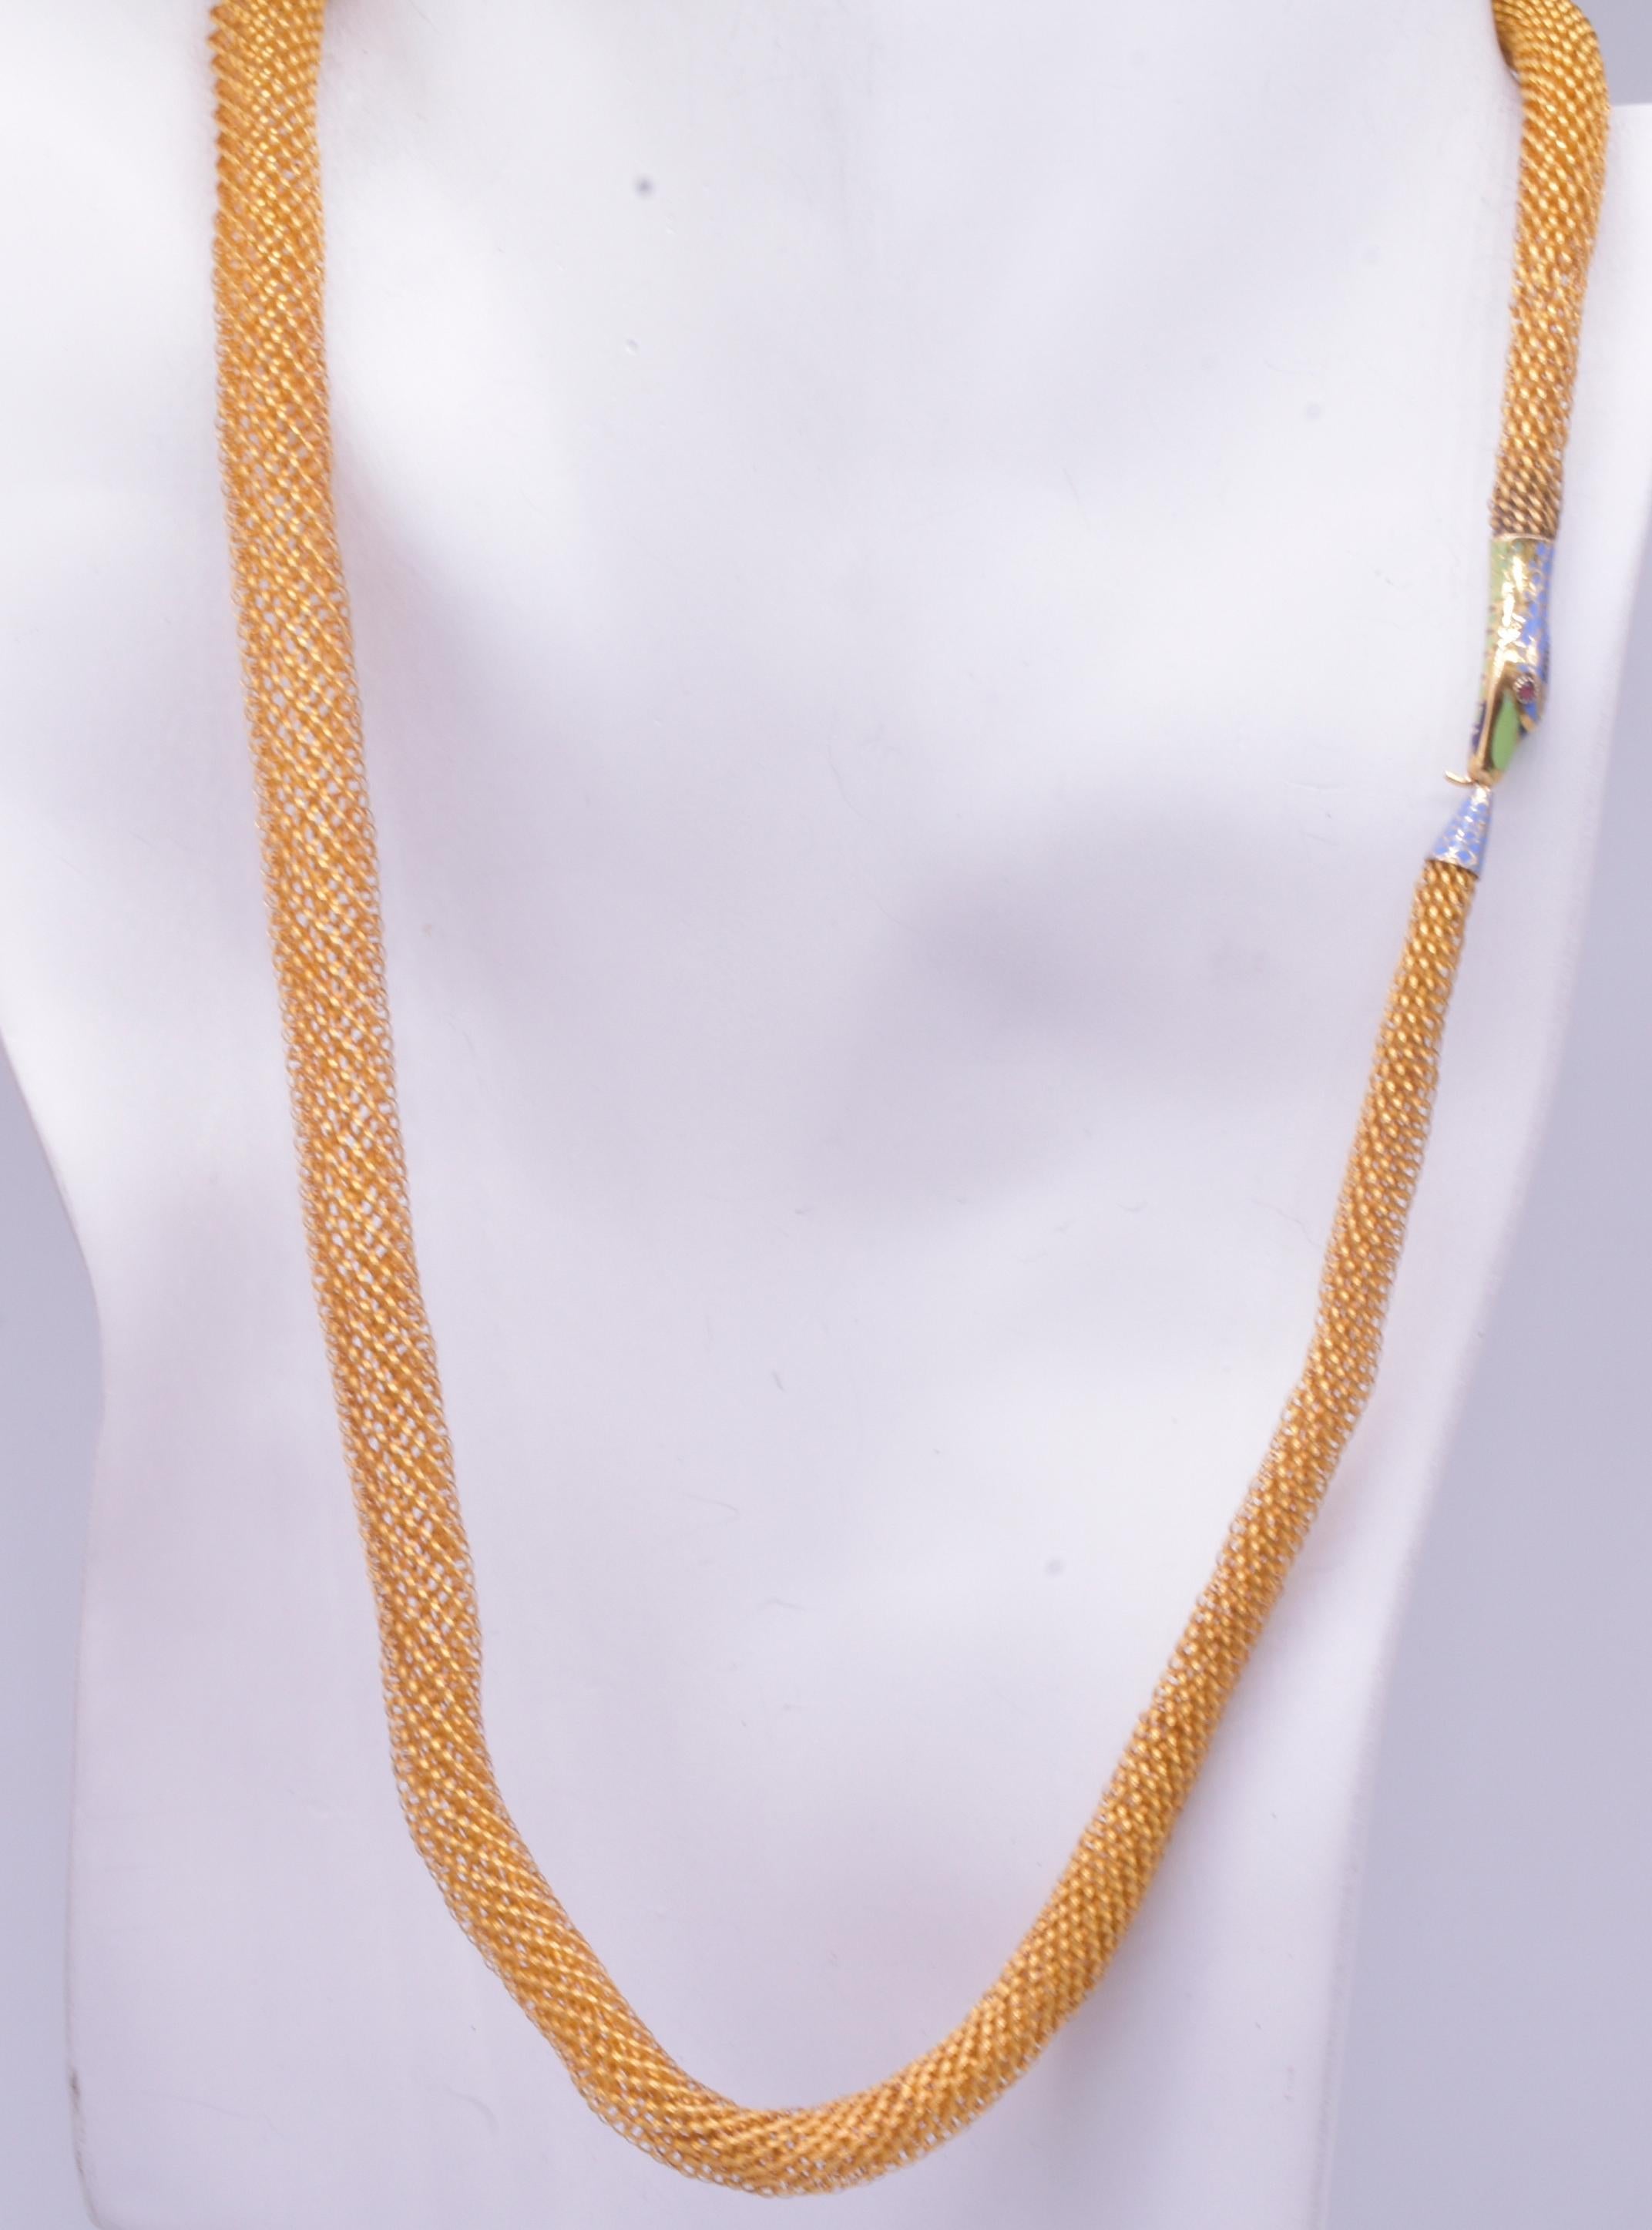 Diese kunstvoll geflochtene Gold-Ouroboros-Halskette mit emaillierter Schlange, die sich in den Schwanz beißt, ist georgianisch, um 1830. Der polychromierte Emaille-Verschluss ist eine spätere Ergänzung aus der Mitte des Viktorianischen Zeitalters.